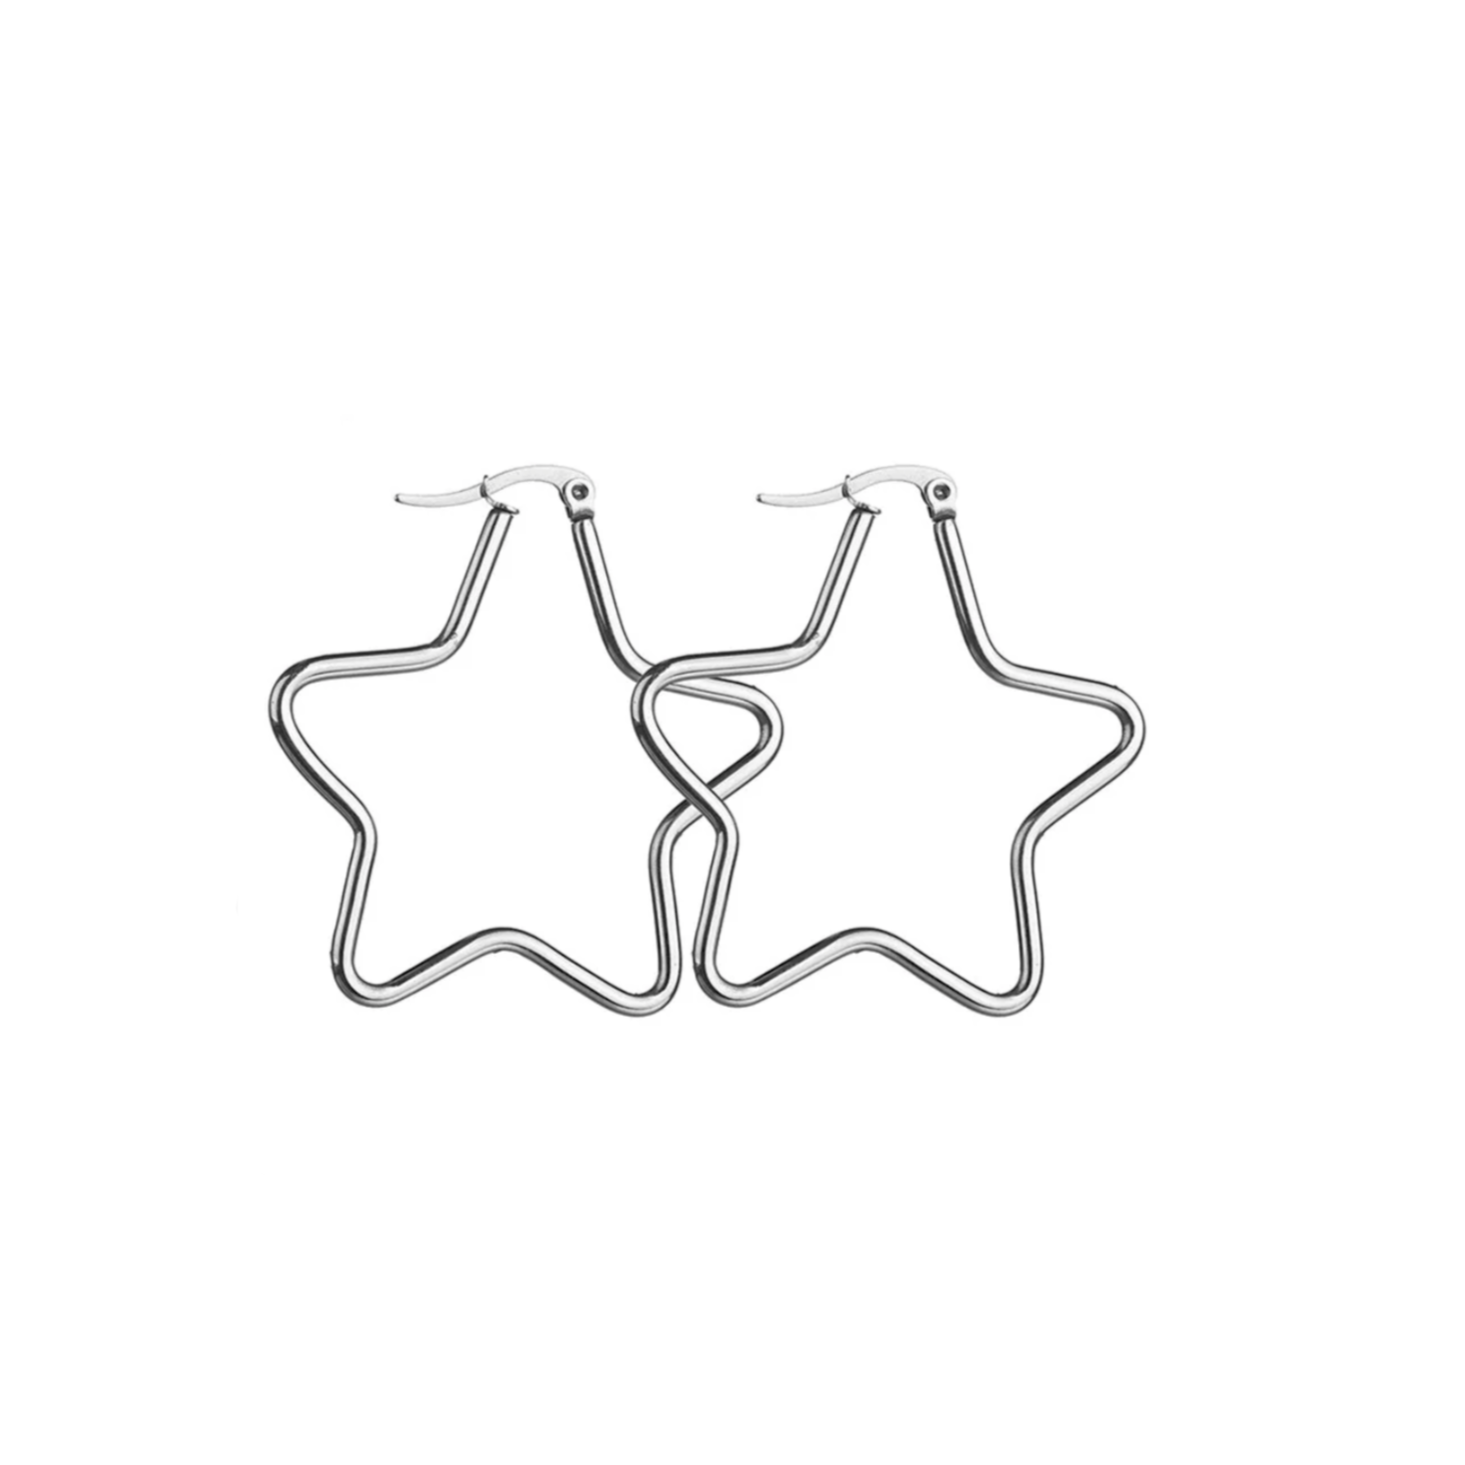 Boucles d'oreilles créoles acier inoxydable argenté étoile 4 cm. Détails produit : Couleur argent. Acier inoxydable argenté. Forme d'étoile. Diamètre 4 cm.